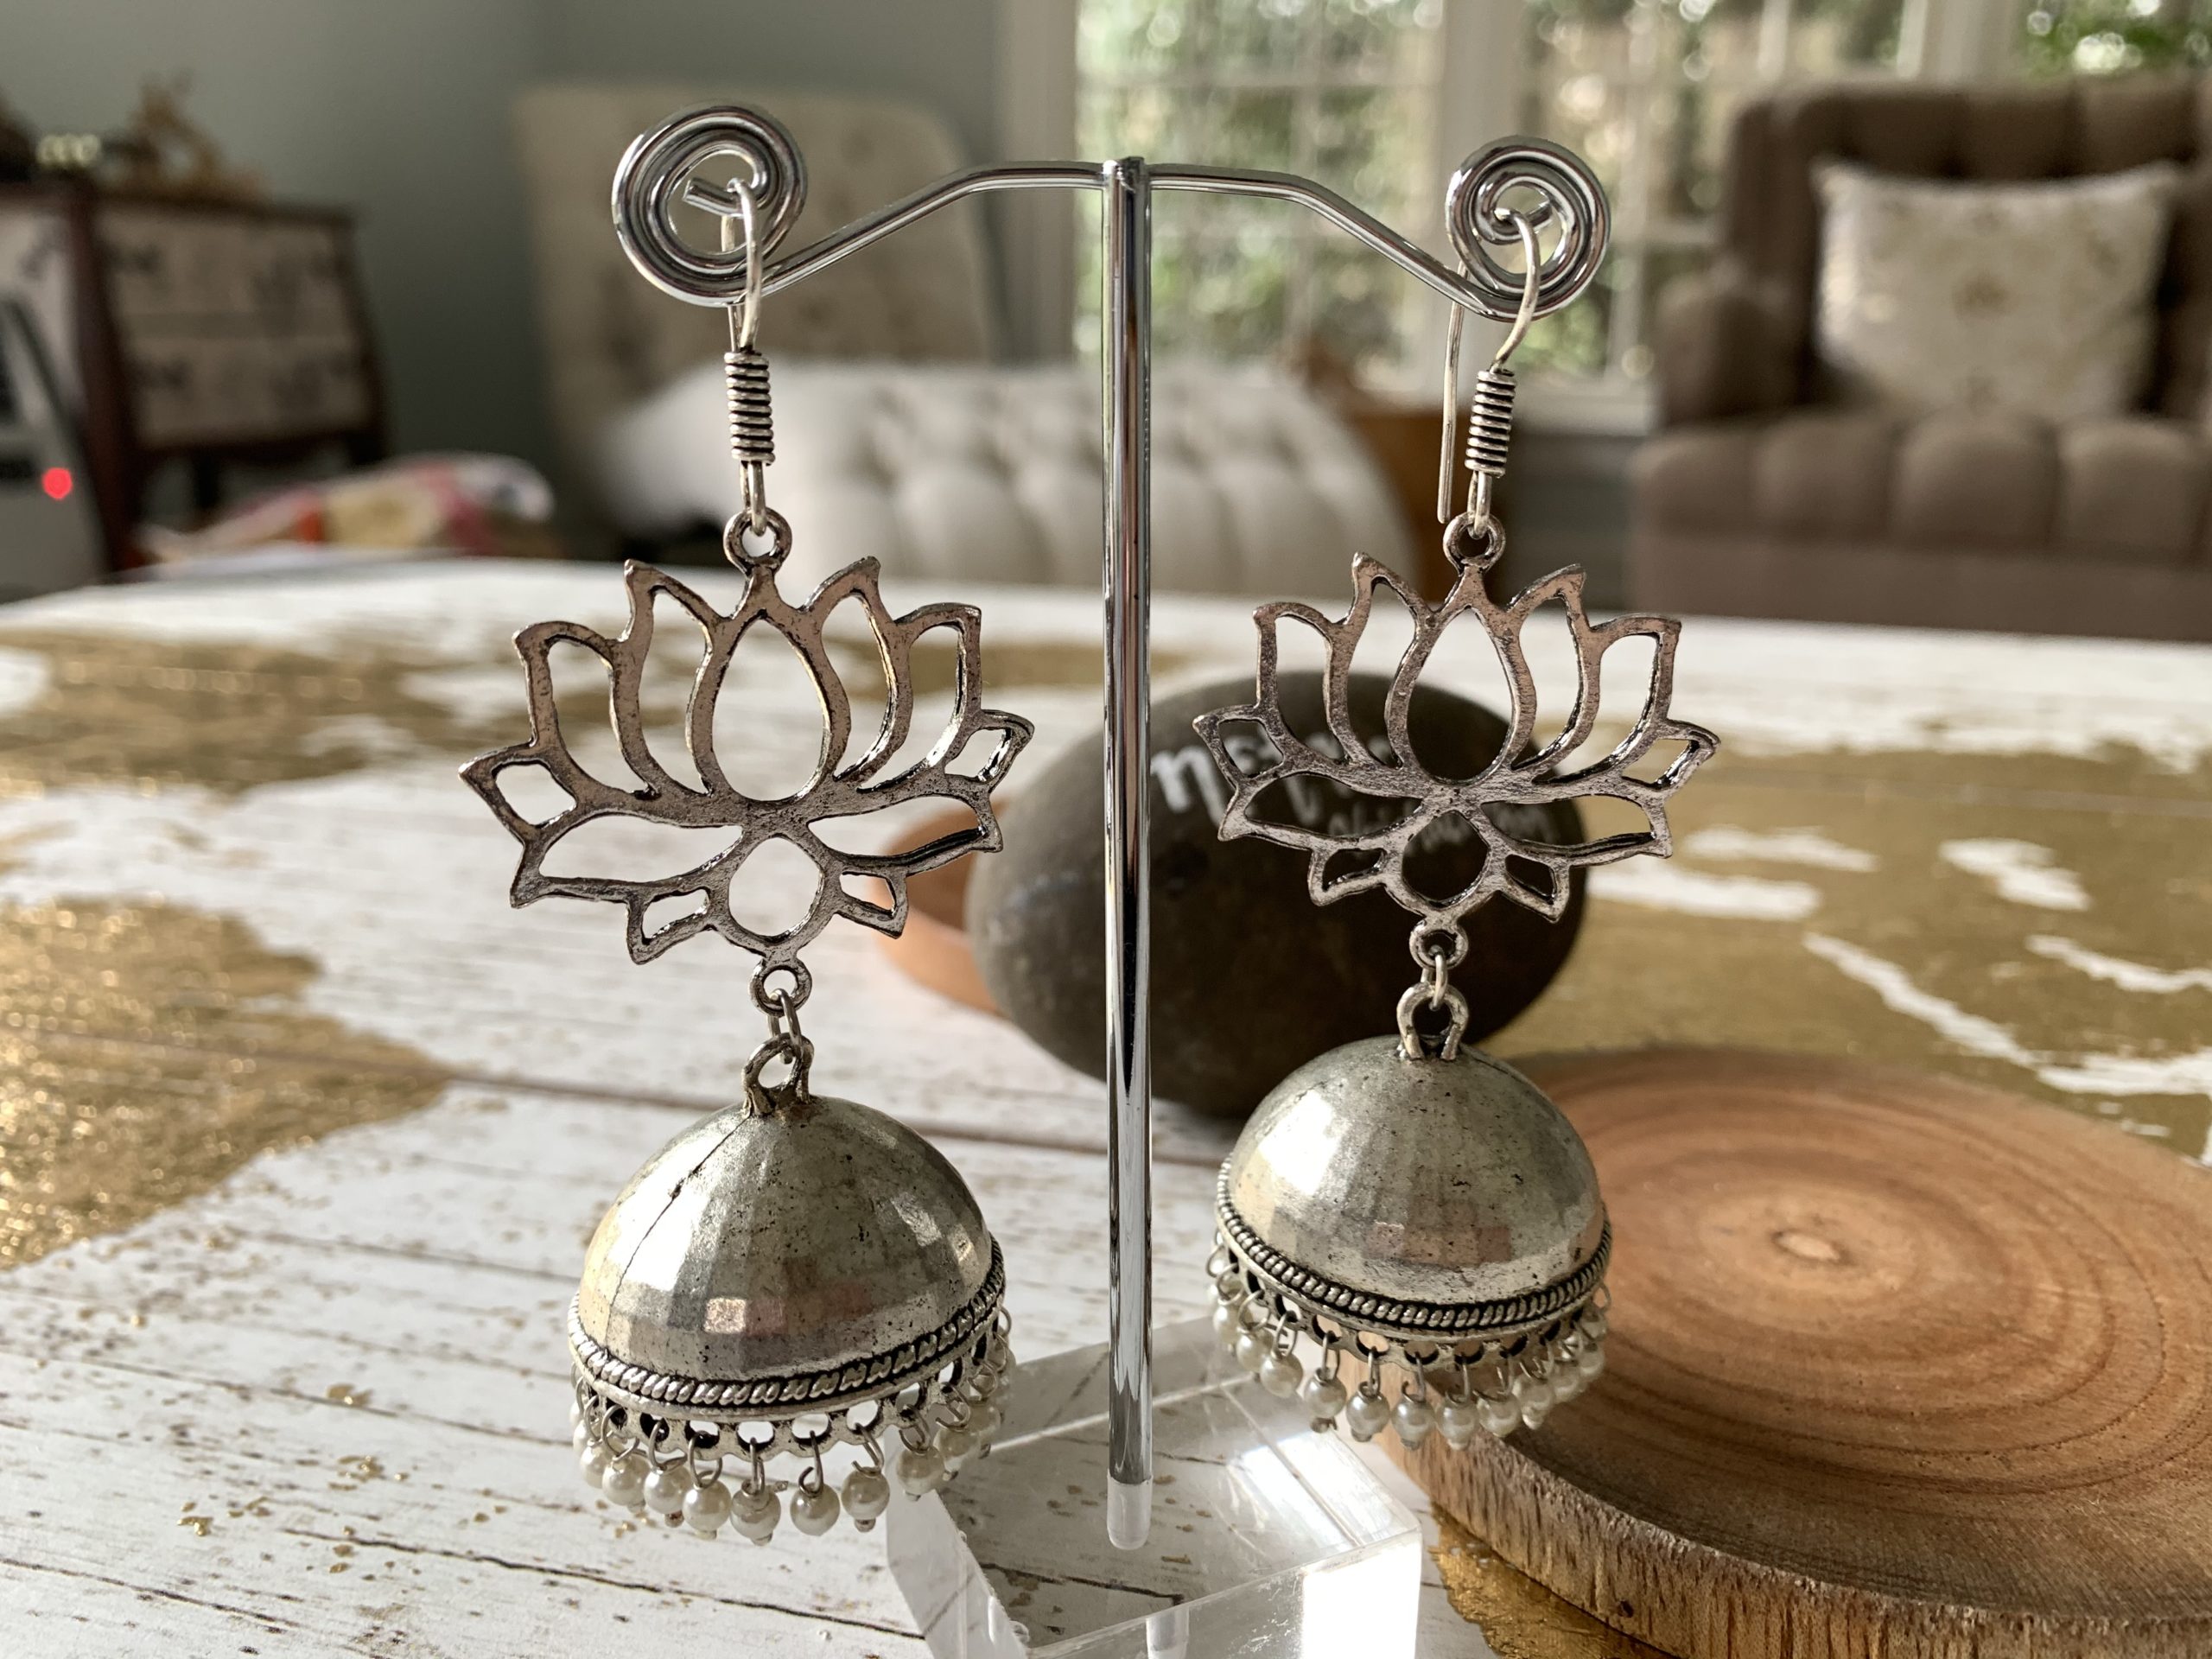 Indian Earrings For Women Oxidized Jhumka Color Big Long Tassel Bells Drop  Earrings Afghan Egypt Gypsy Turk Ethnic Jewelry - Dangle Earrings -  AliExpress